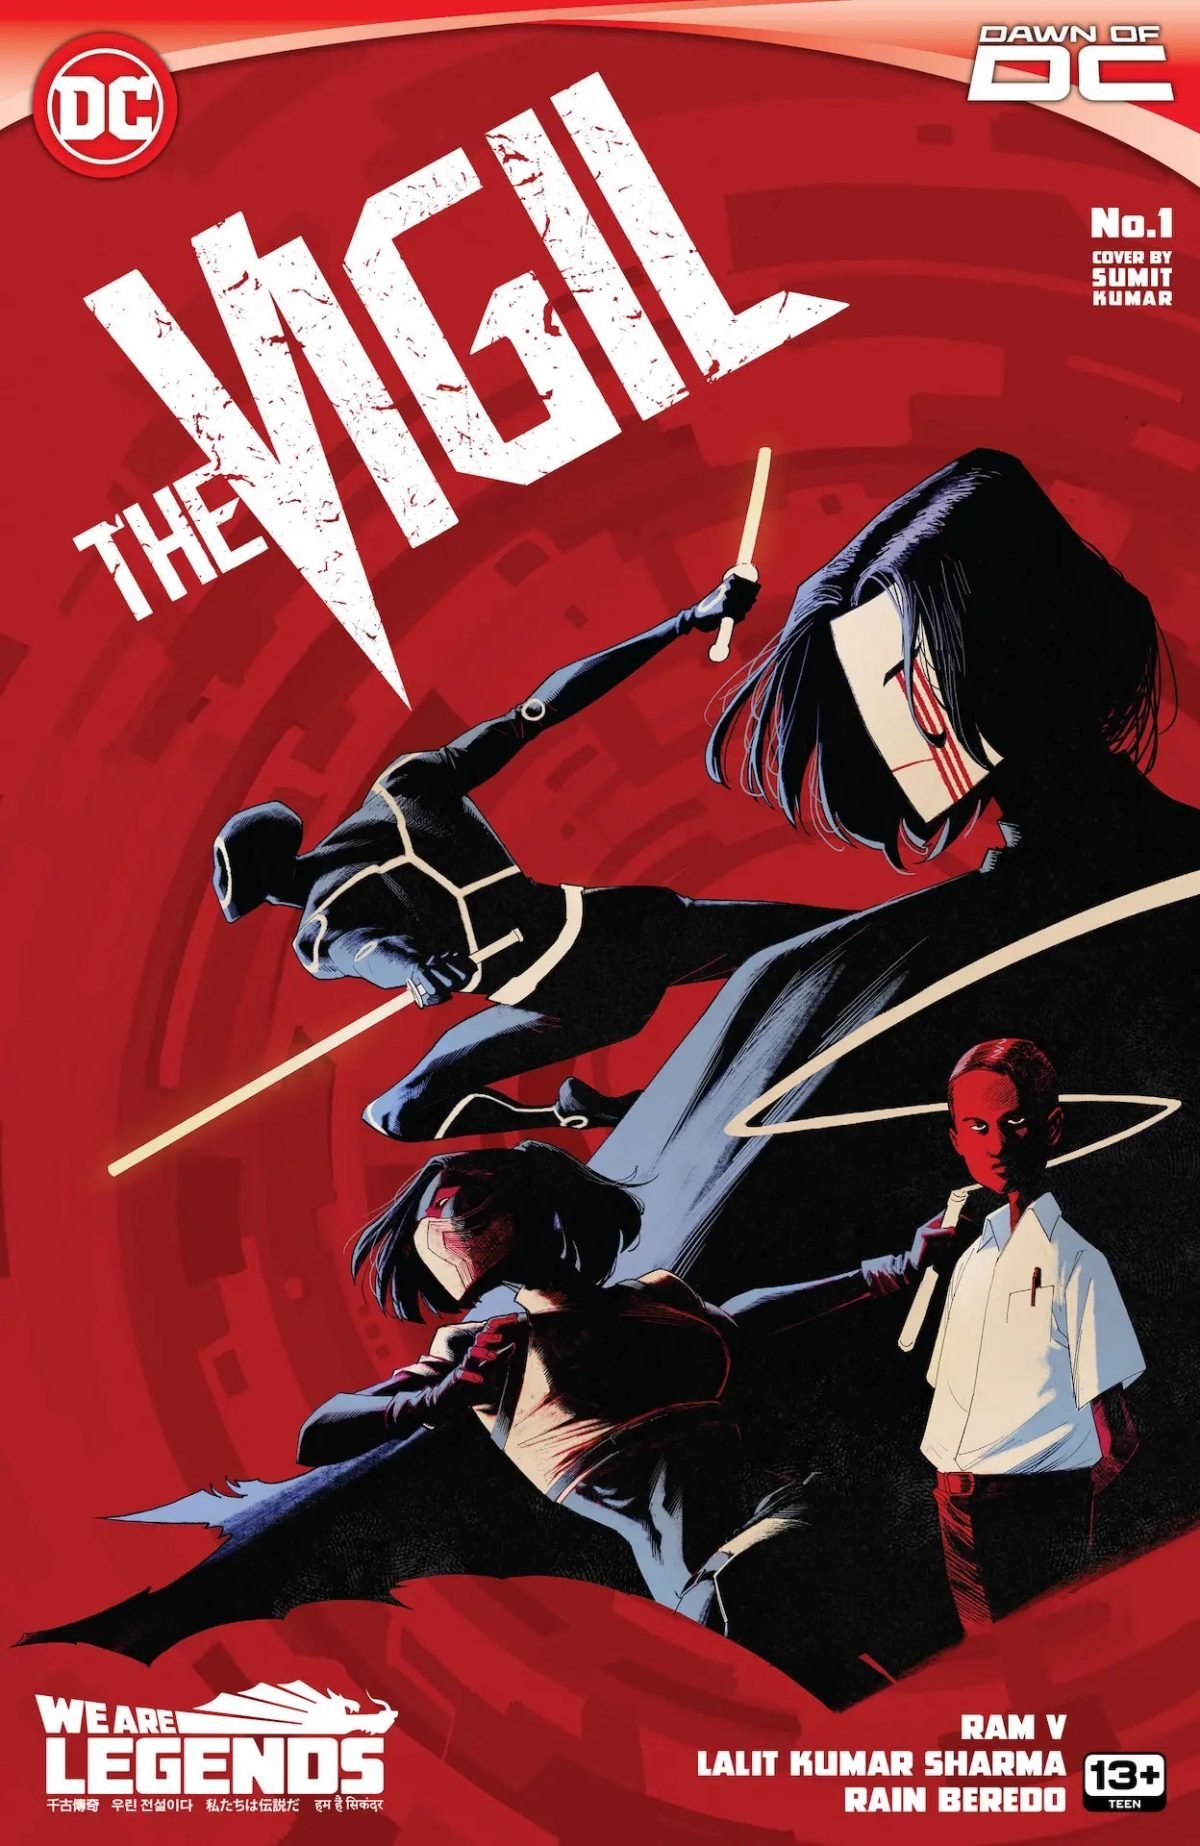 The Vigil #1 comics cover